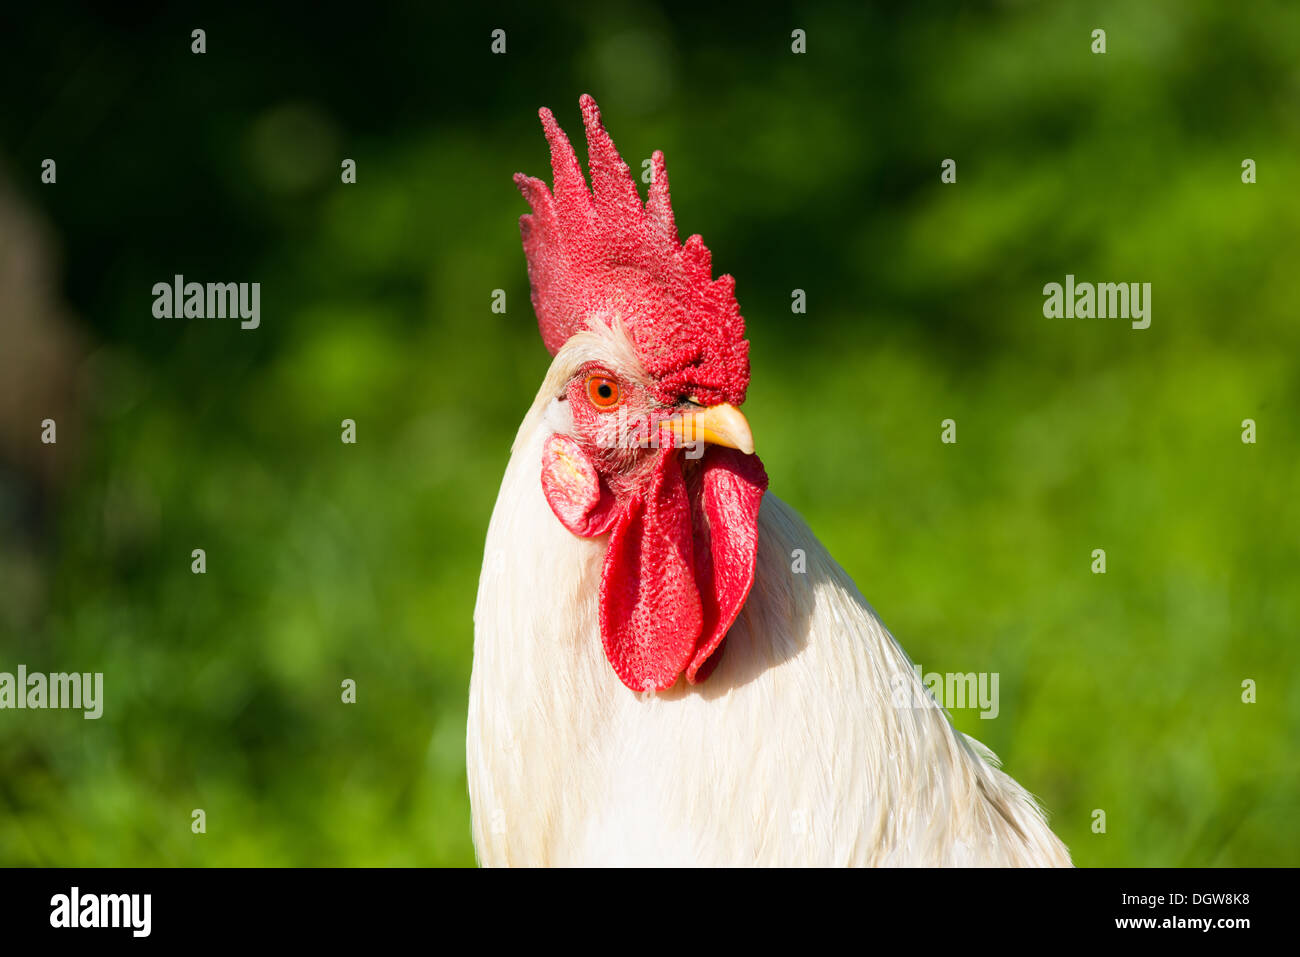 Orgulloso gallo blanco en una granja Foto de stock